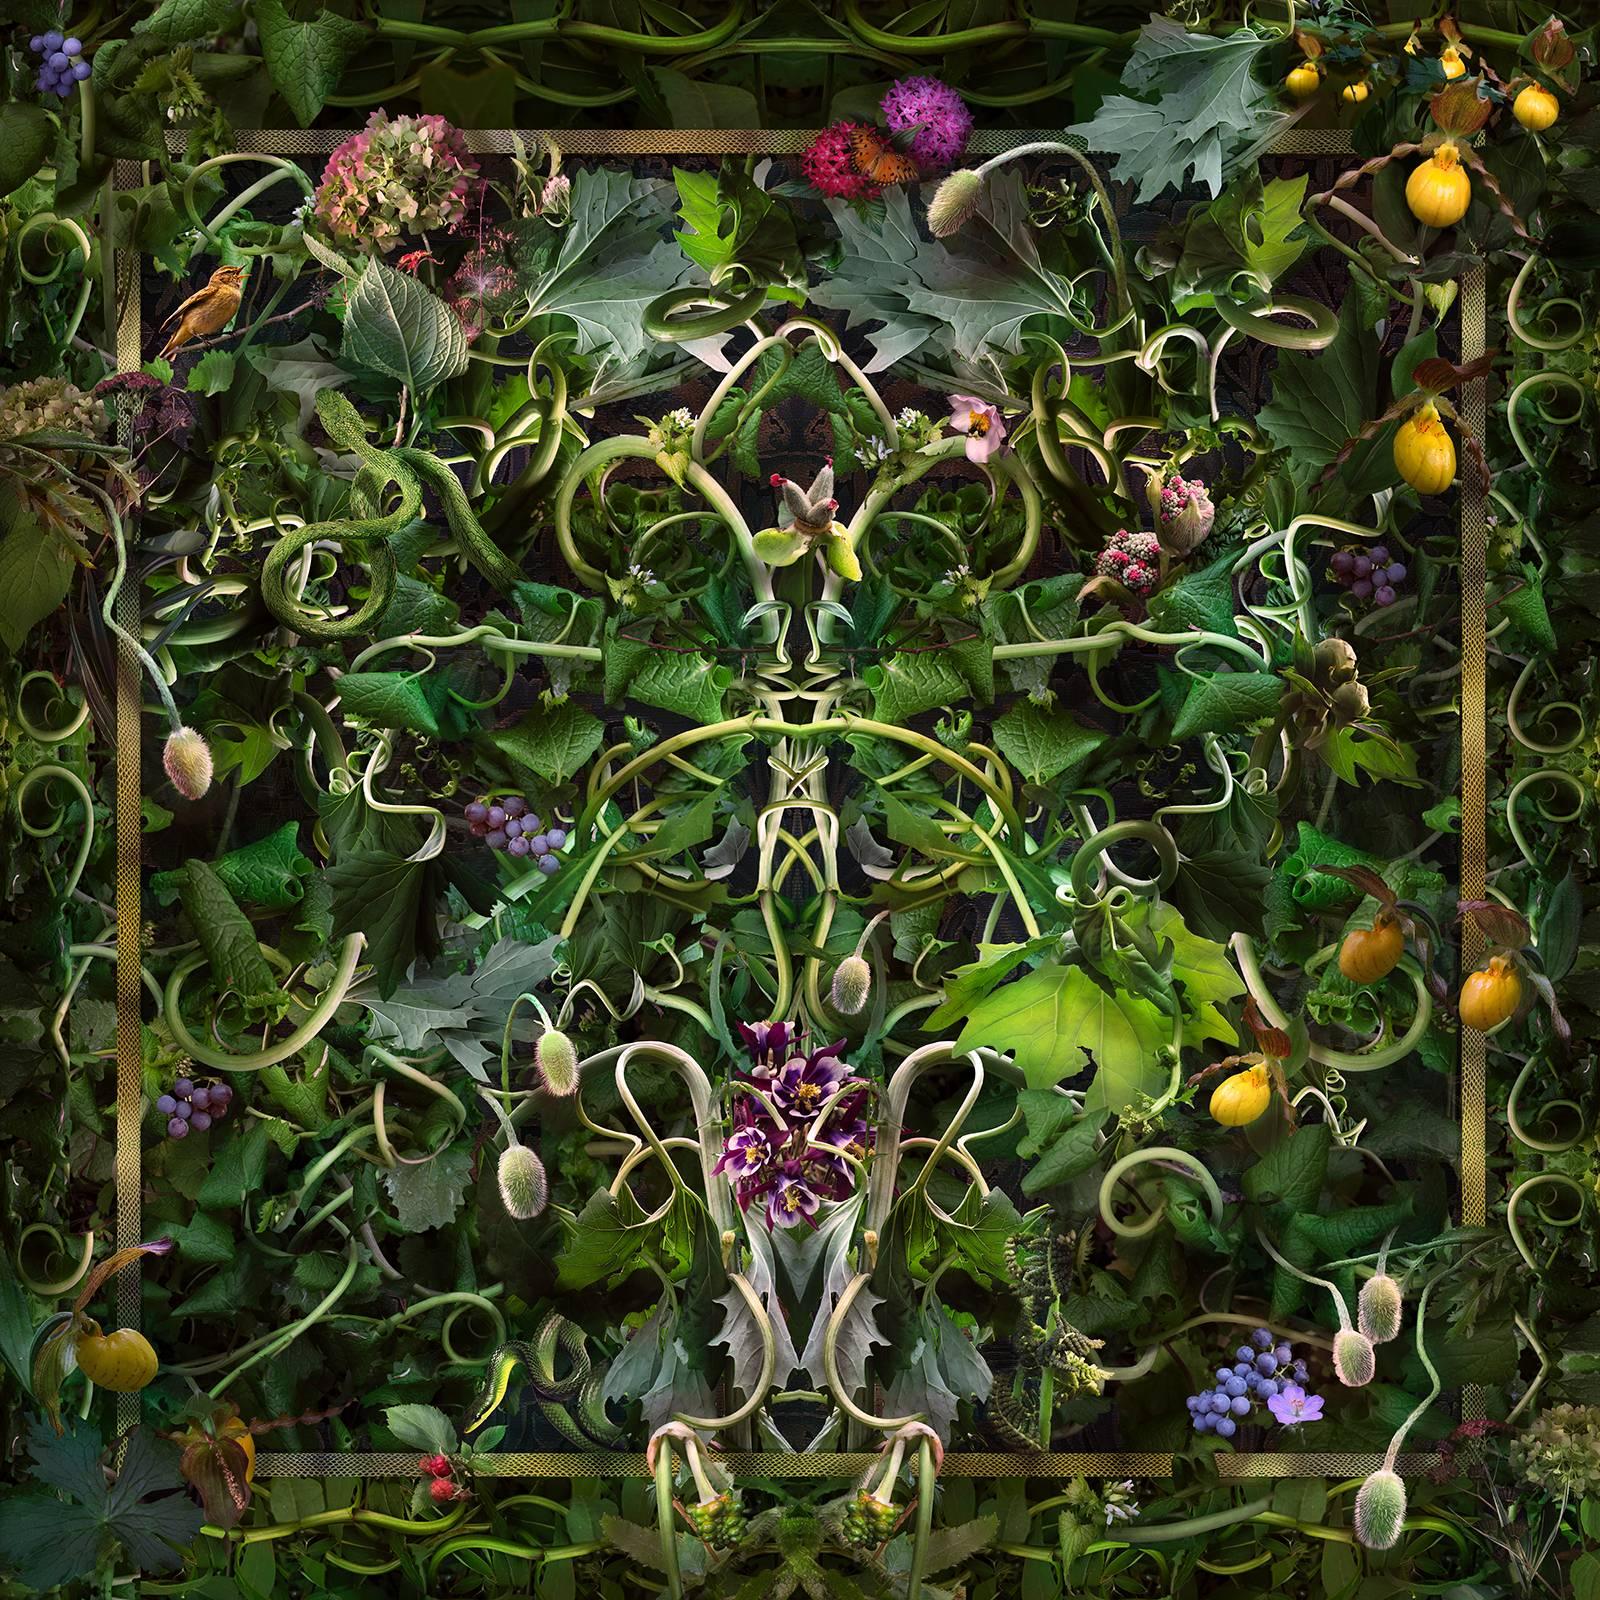 Feared, Loved ( Photo de nature morte de style baroque abstrait représentant des vignes et des fleurs vertes)